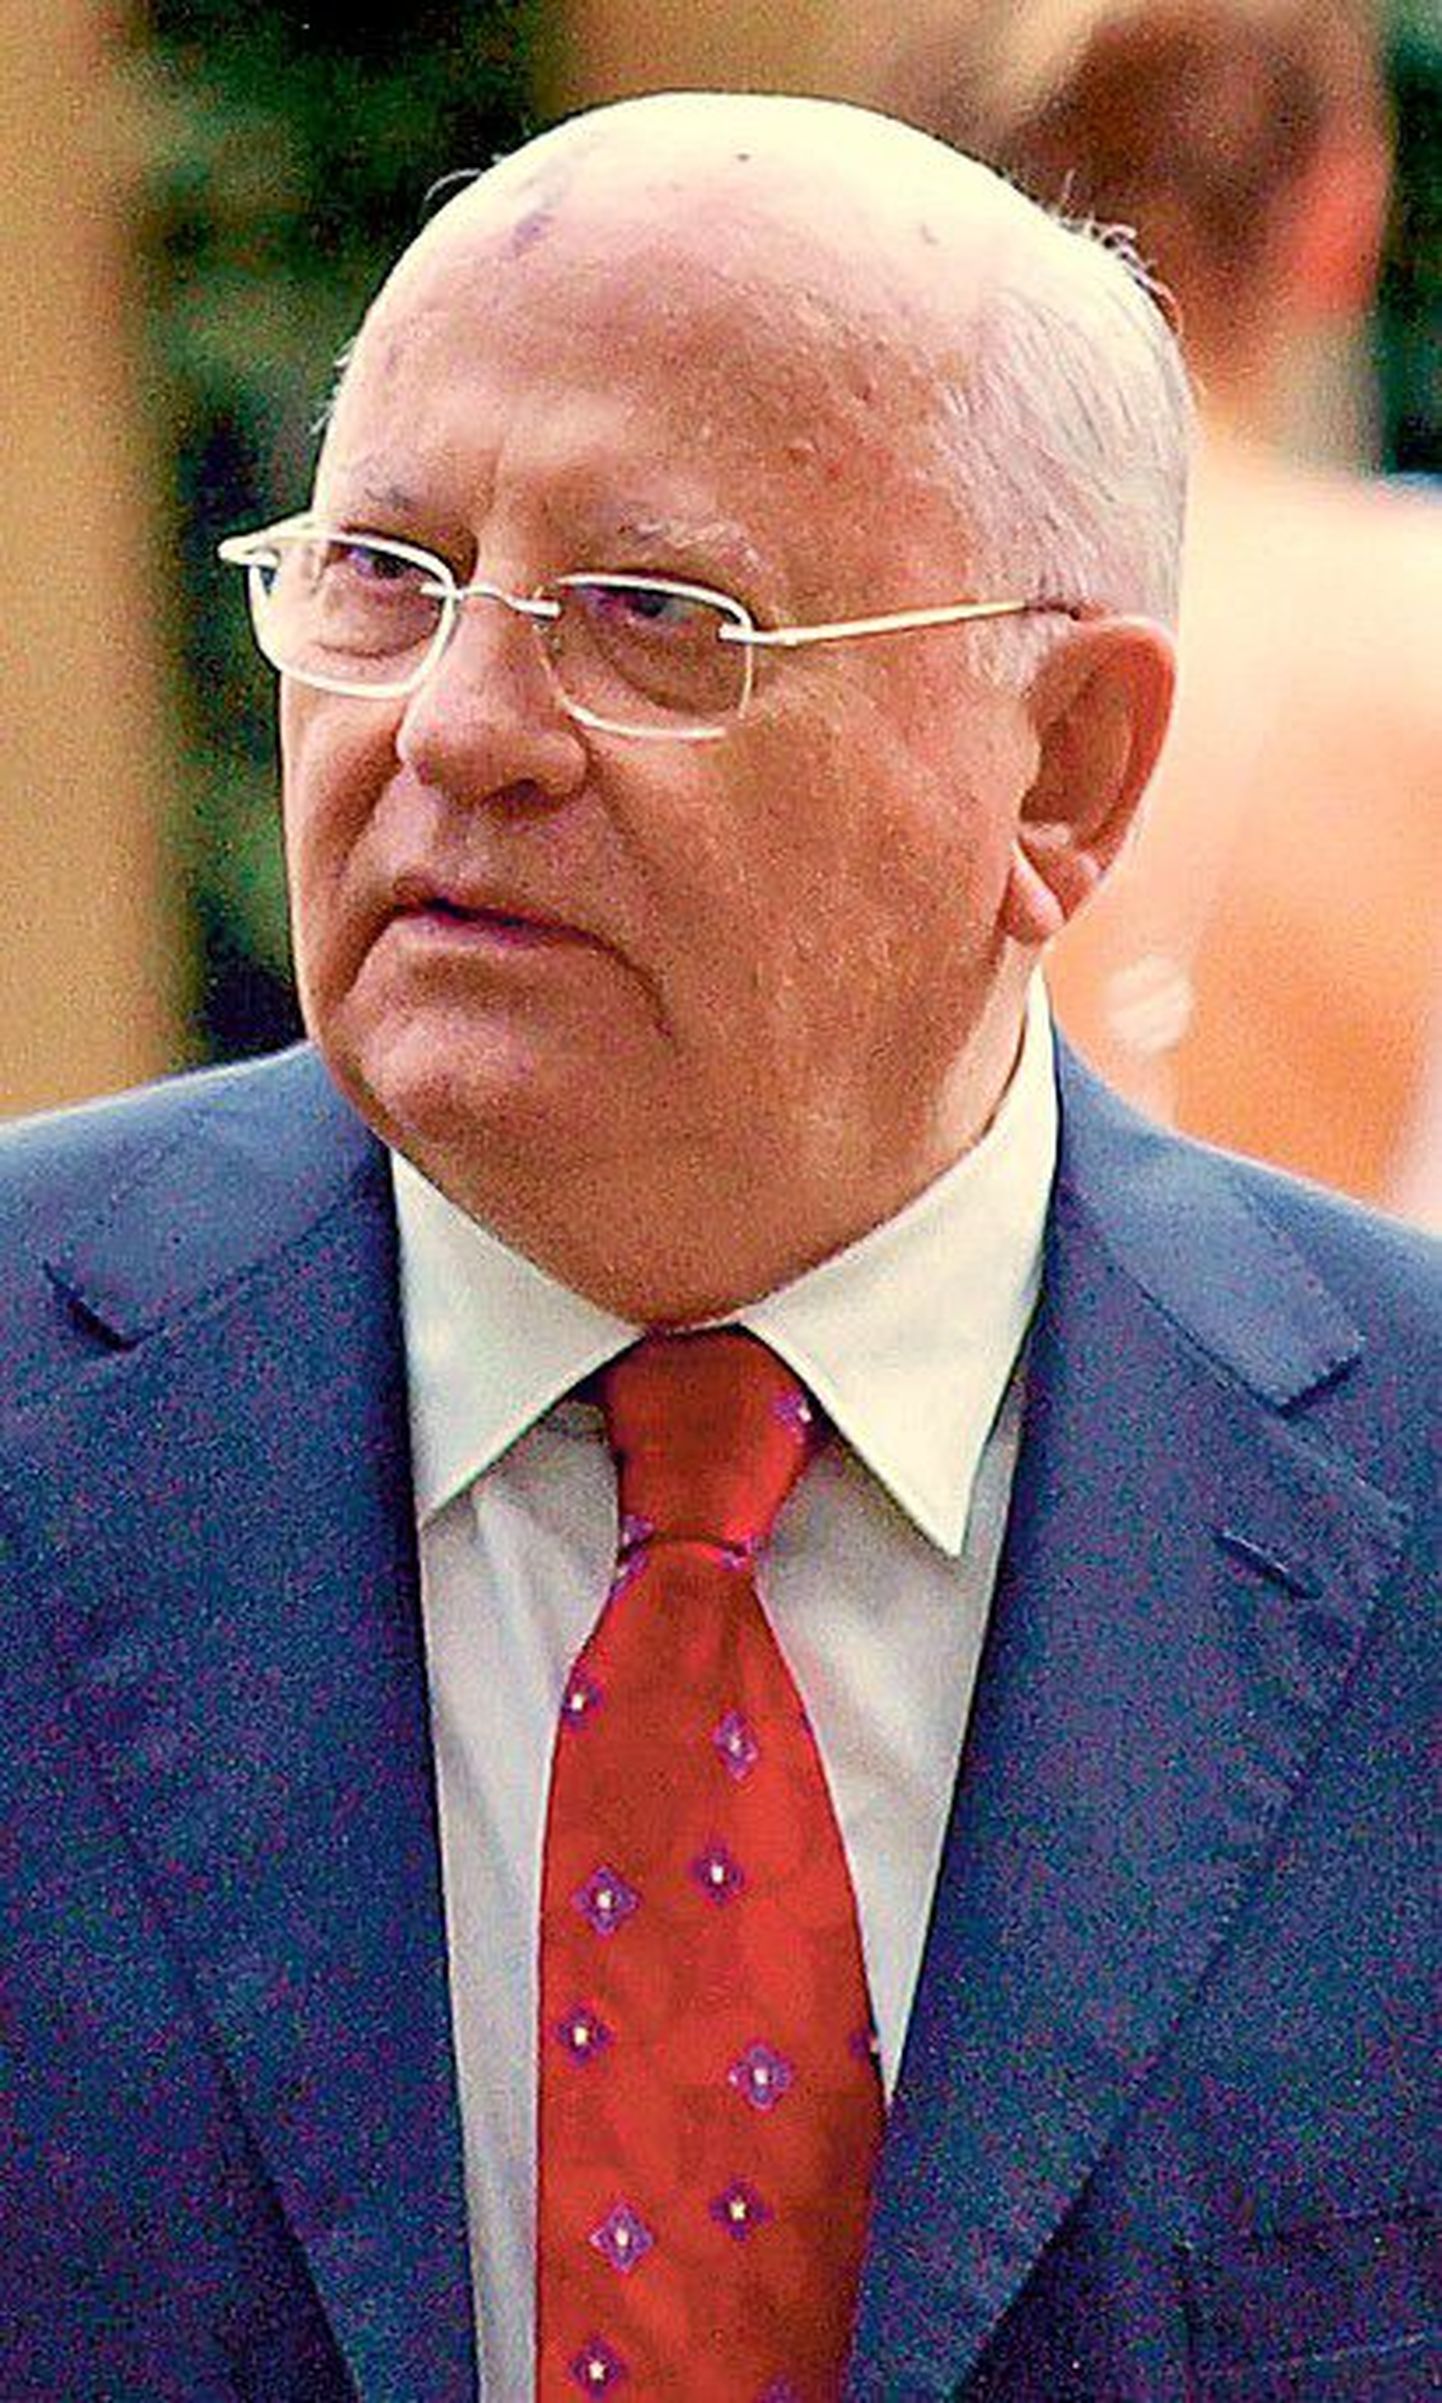 NSVLi viimane juht 
Mihhail Gorbatšov kirjutab, et mure Põhja-Korea tuumakatsetuste pärast on mõistetav, kuid lahendused saavad olla vaid poliitilised, kindlasti mitte sõjalised.